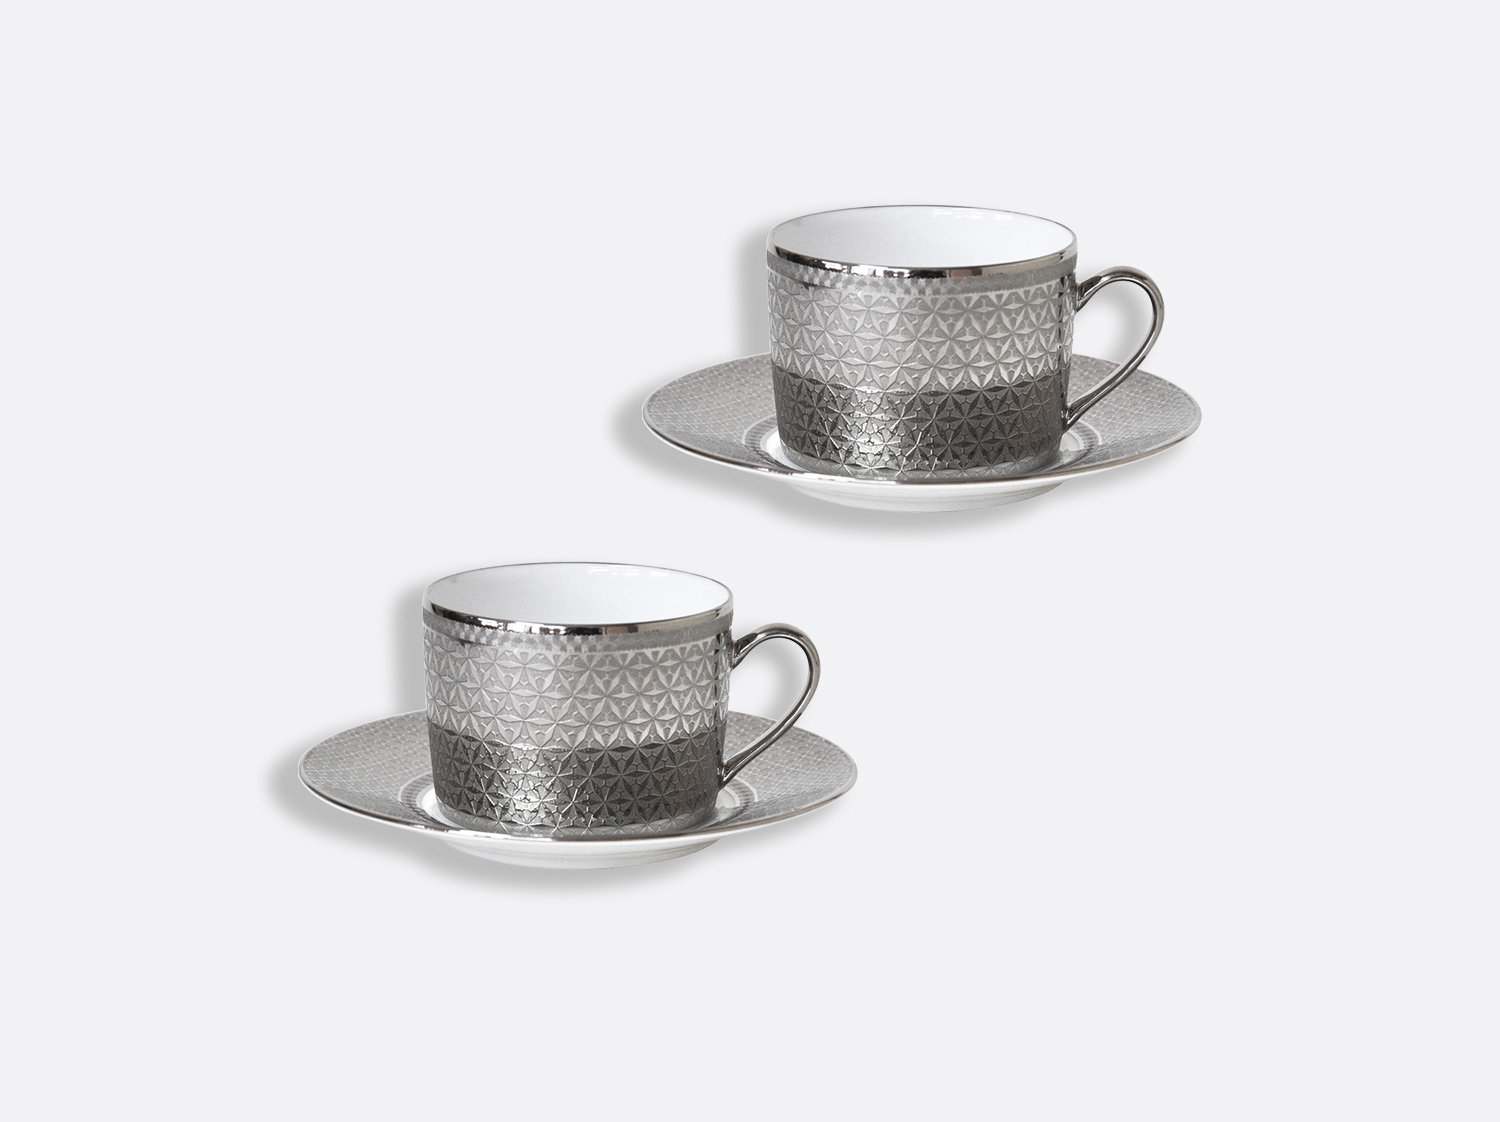 Bernardaud Aboro Tea Cup and Saucer